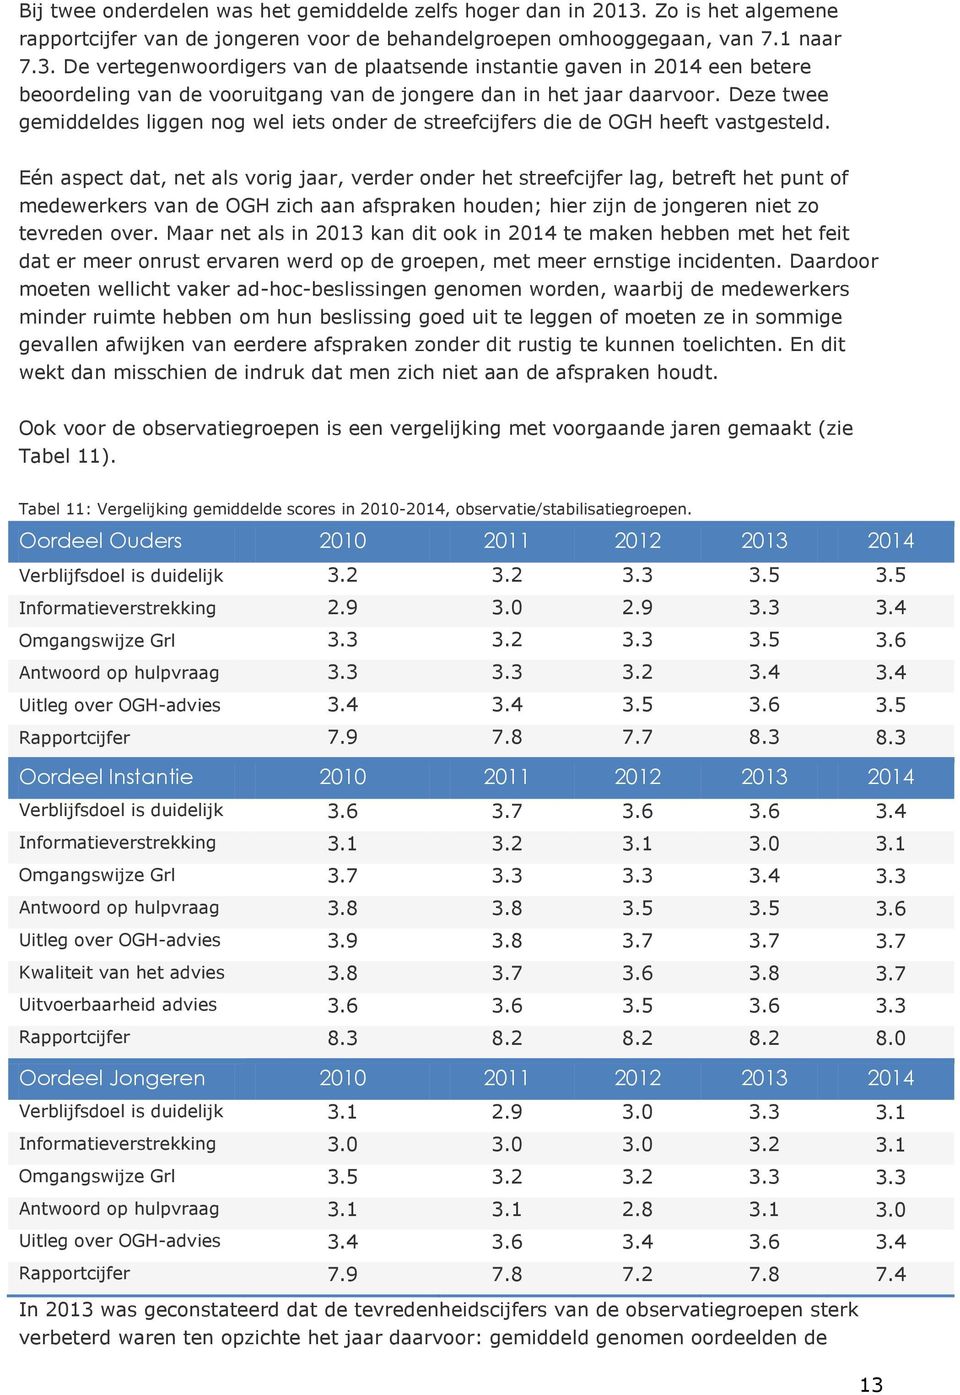 De vertegenwoordigers van de plaatsende instantie gaven in 2014 een betere beoordeling van de vooruitgang van de jongere dan in het jaar daarvoor.